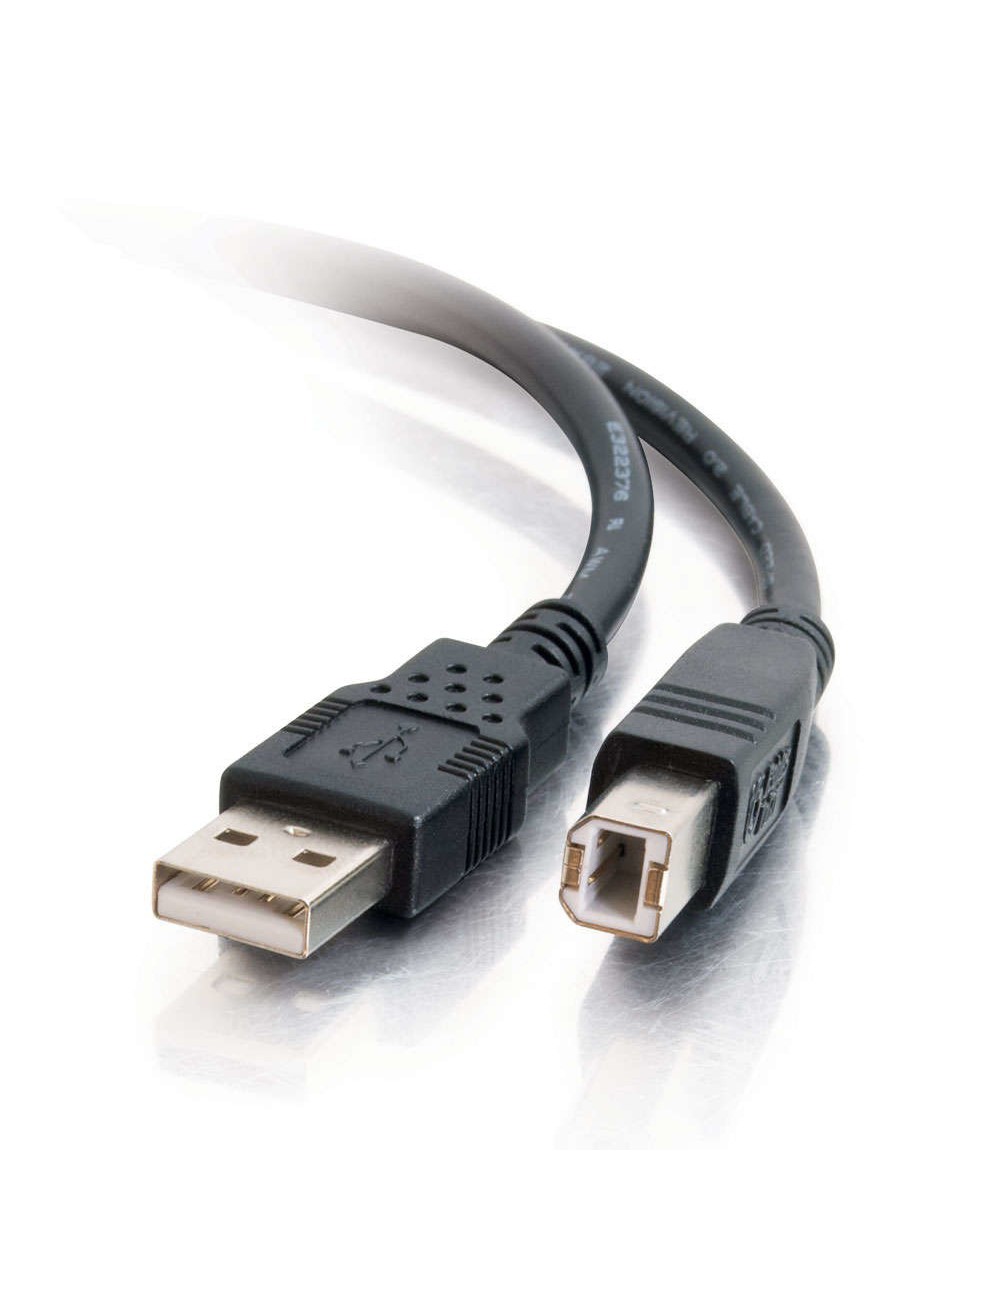 C2G Cable USB 2.0 A B de 2 m, negro